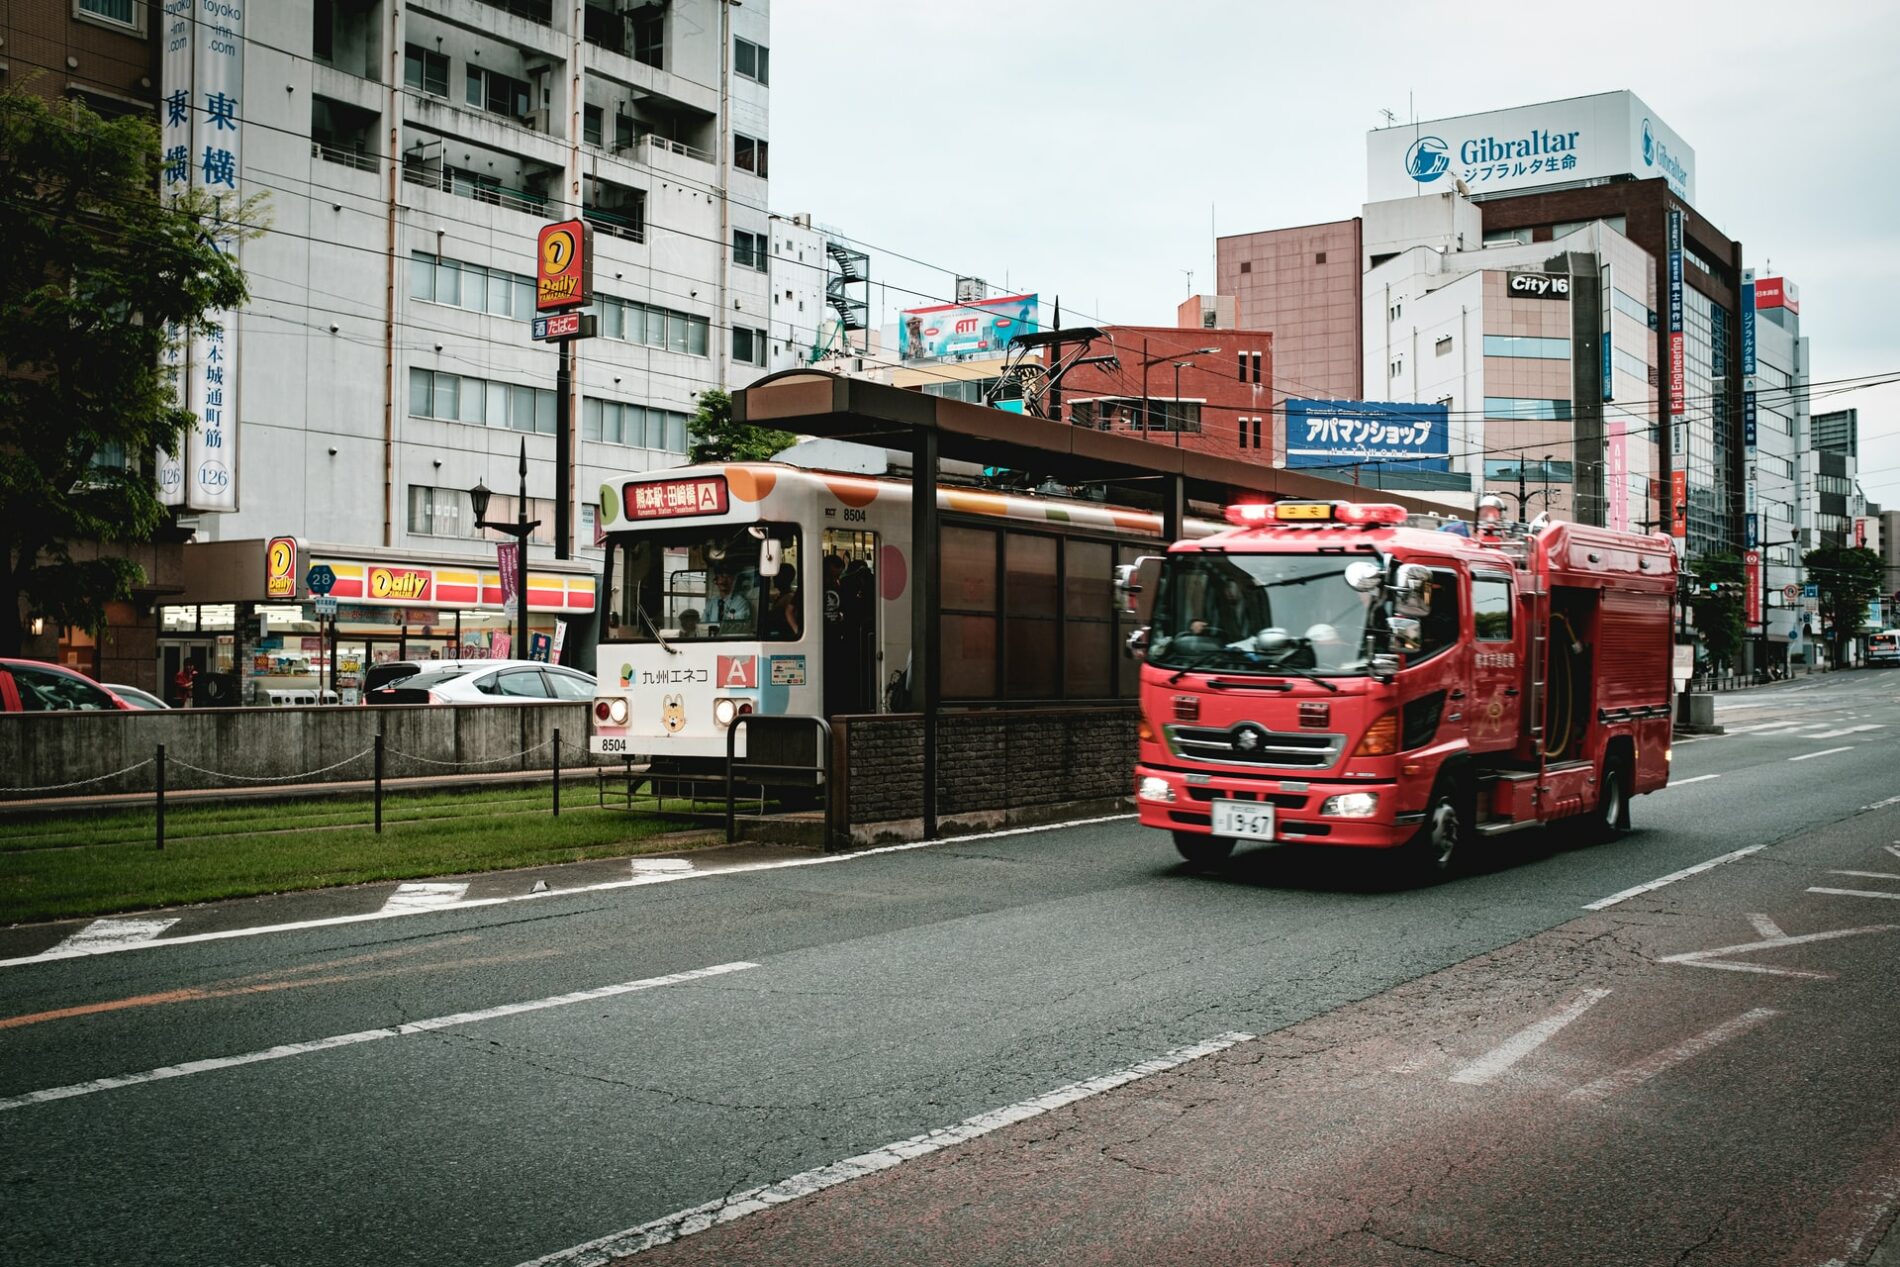 Ein Feuerwehrauto in Kumamoto. (Foto: Christian Chen, Unsplash https://unsplash.com/photos/v04x4qUYkpw)